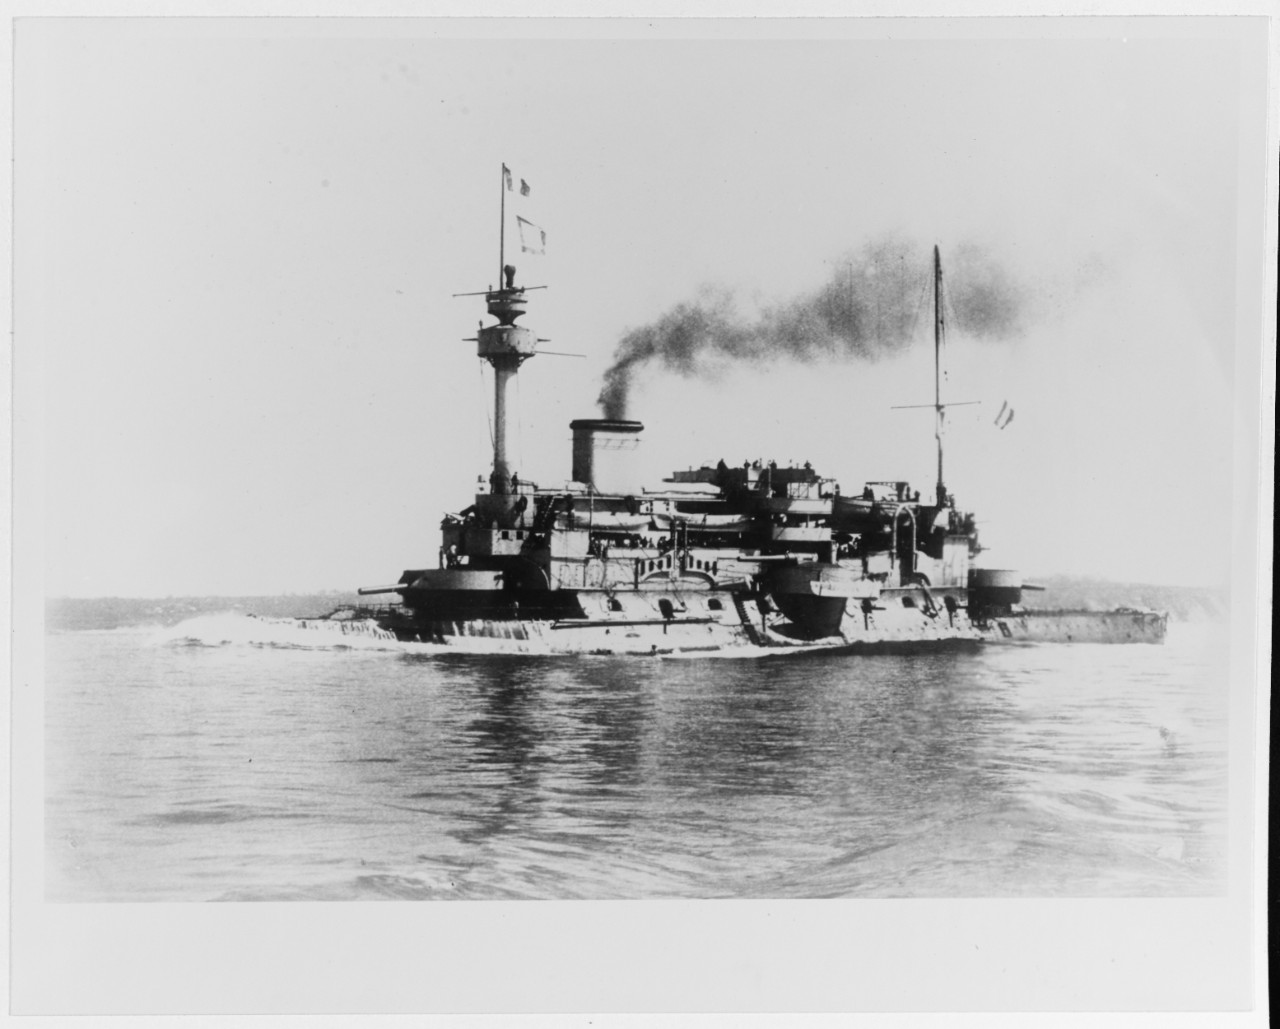 HOCHE (French battleship, 1886-1913)